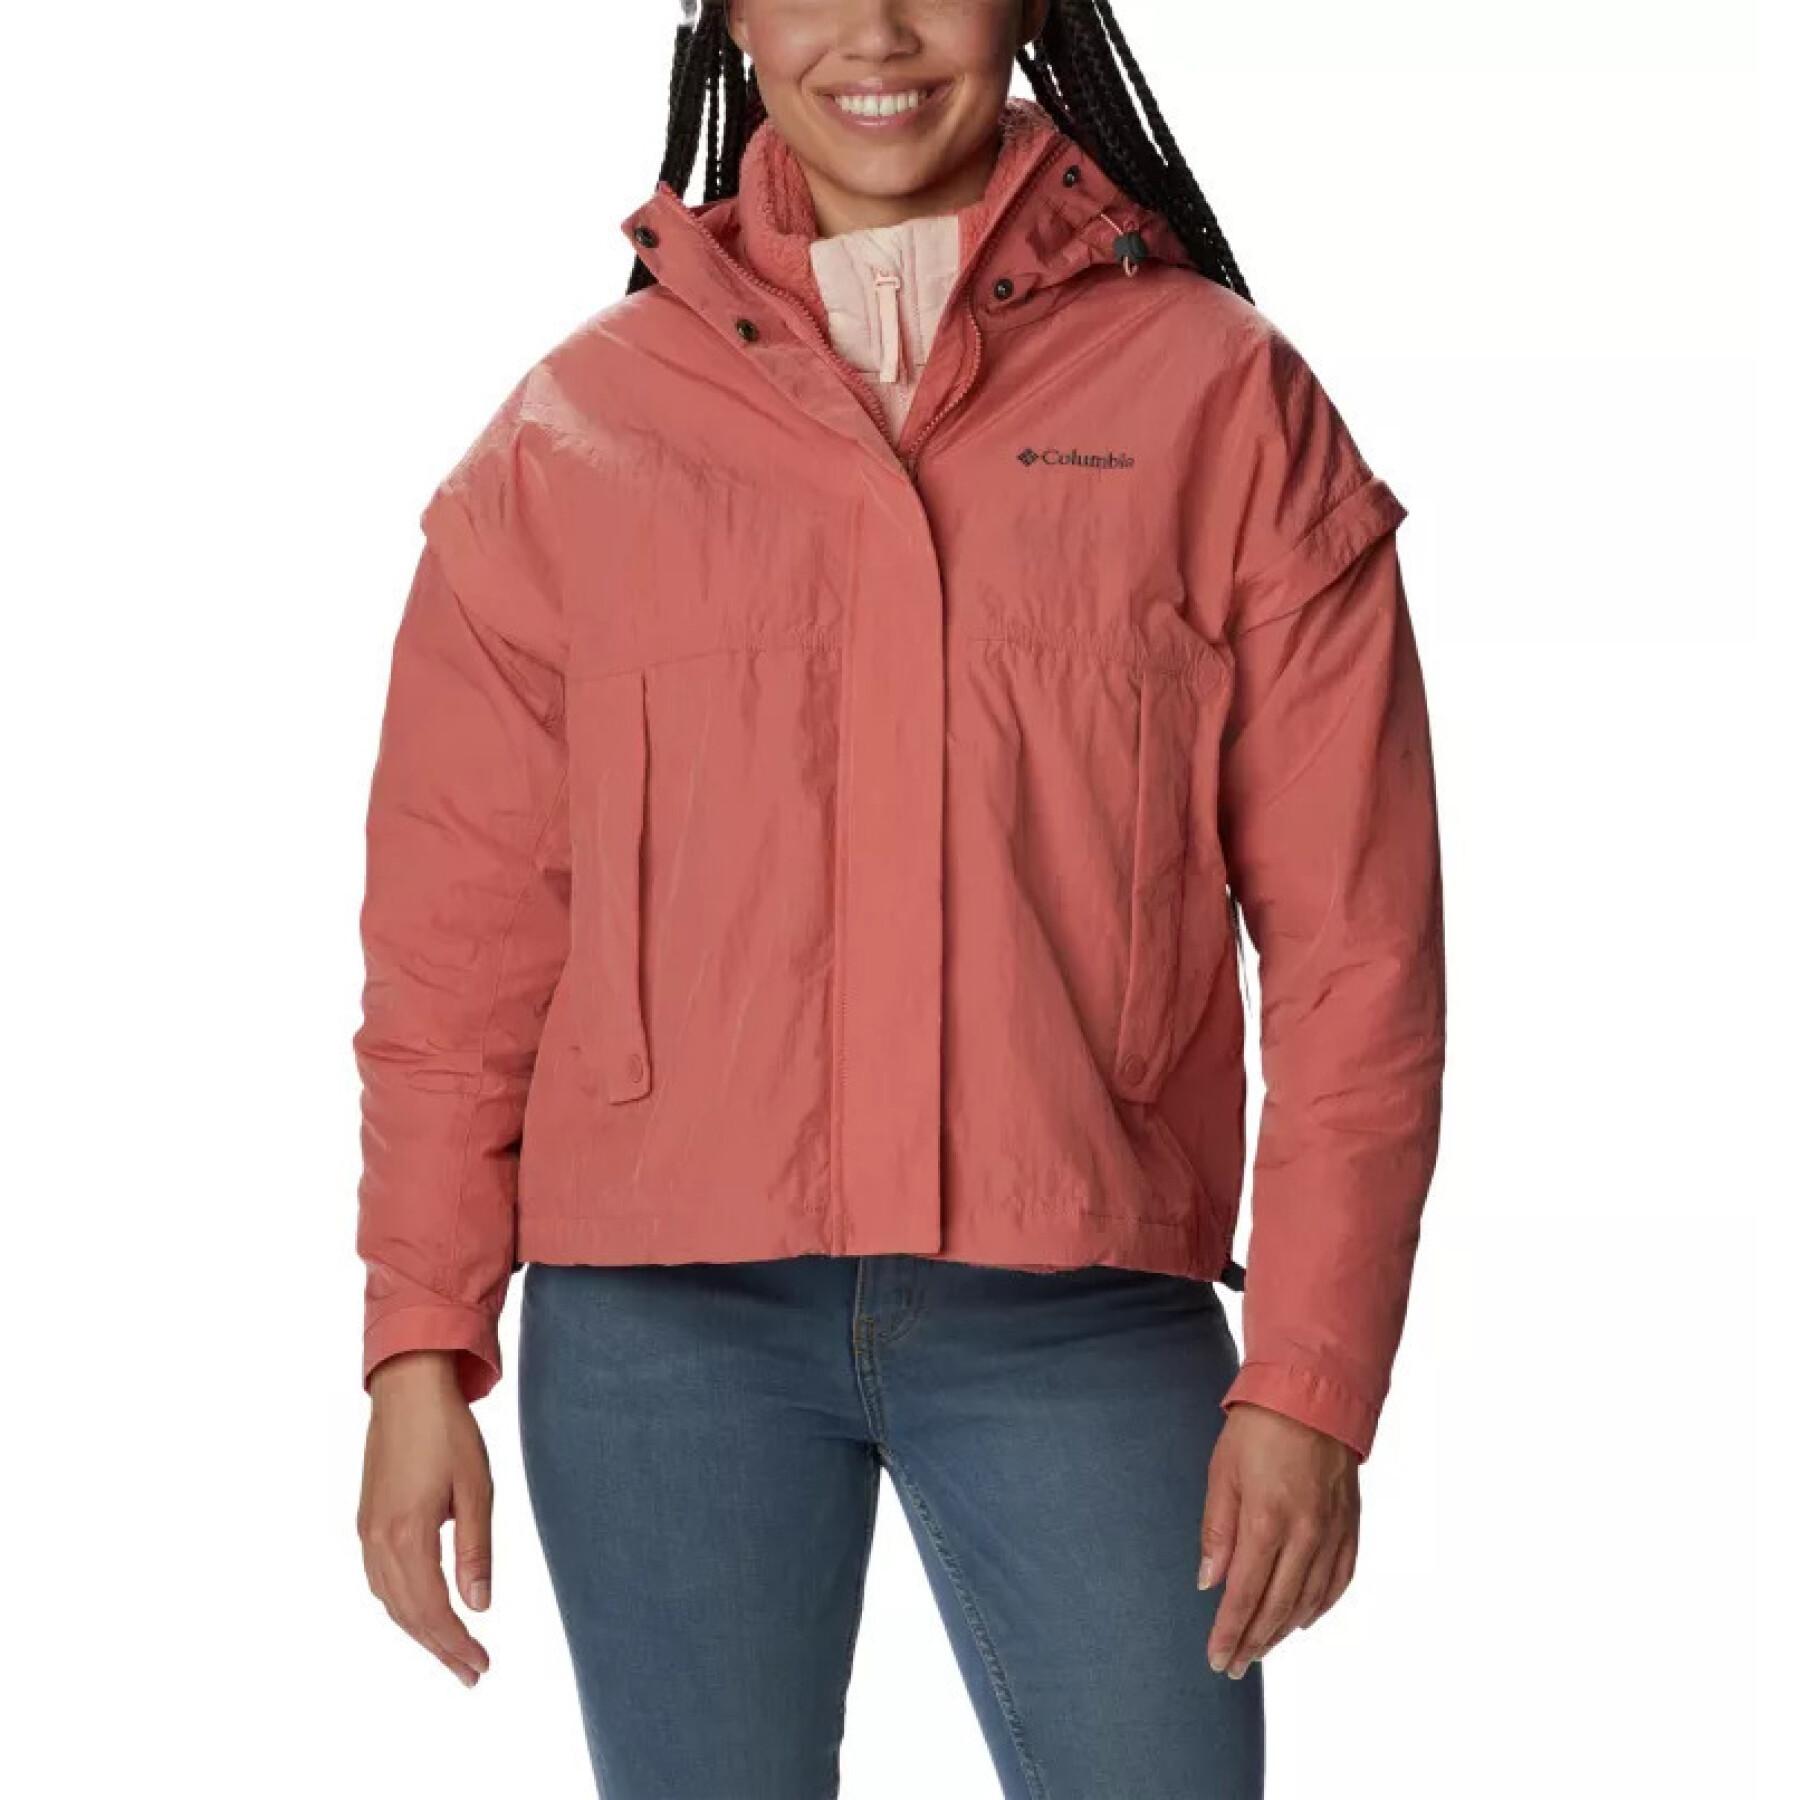 Women's jacket Columbia Laurelwoods™ Interchange - Jackets - Women riders -  Rider